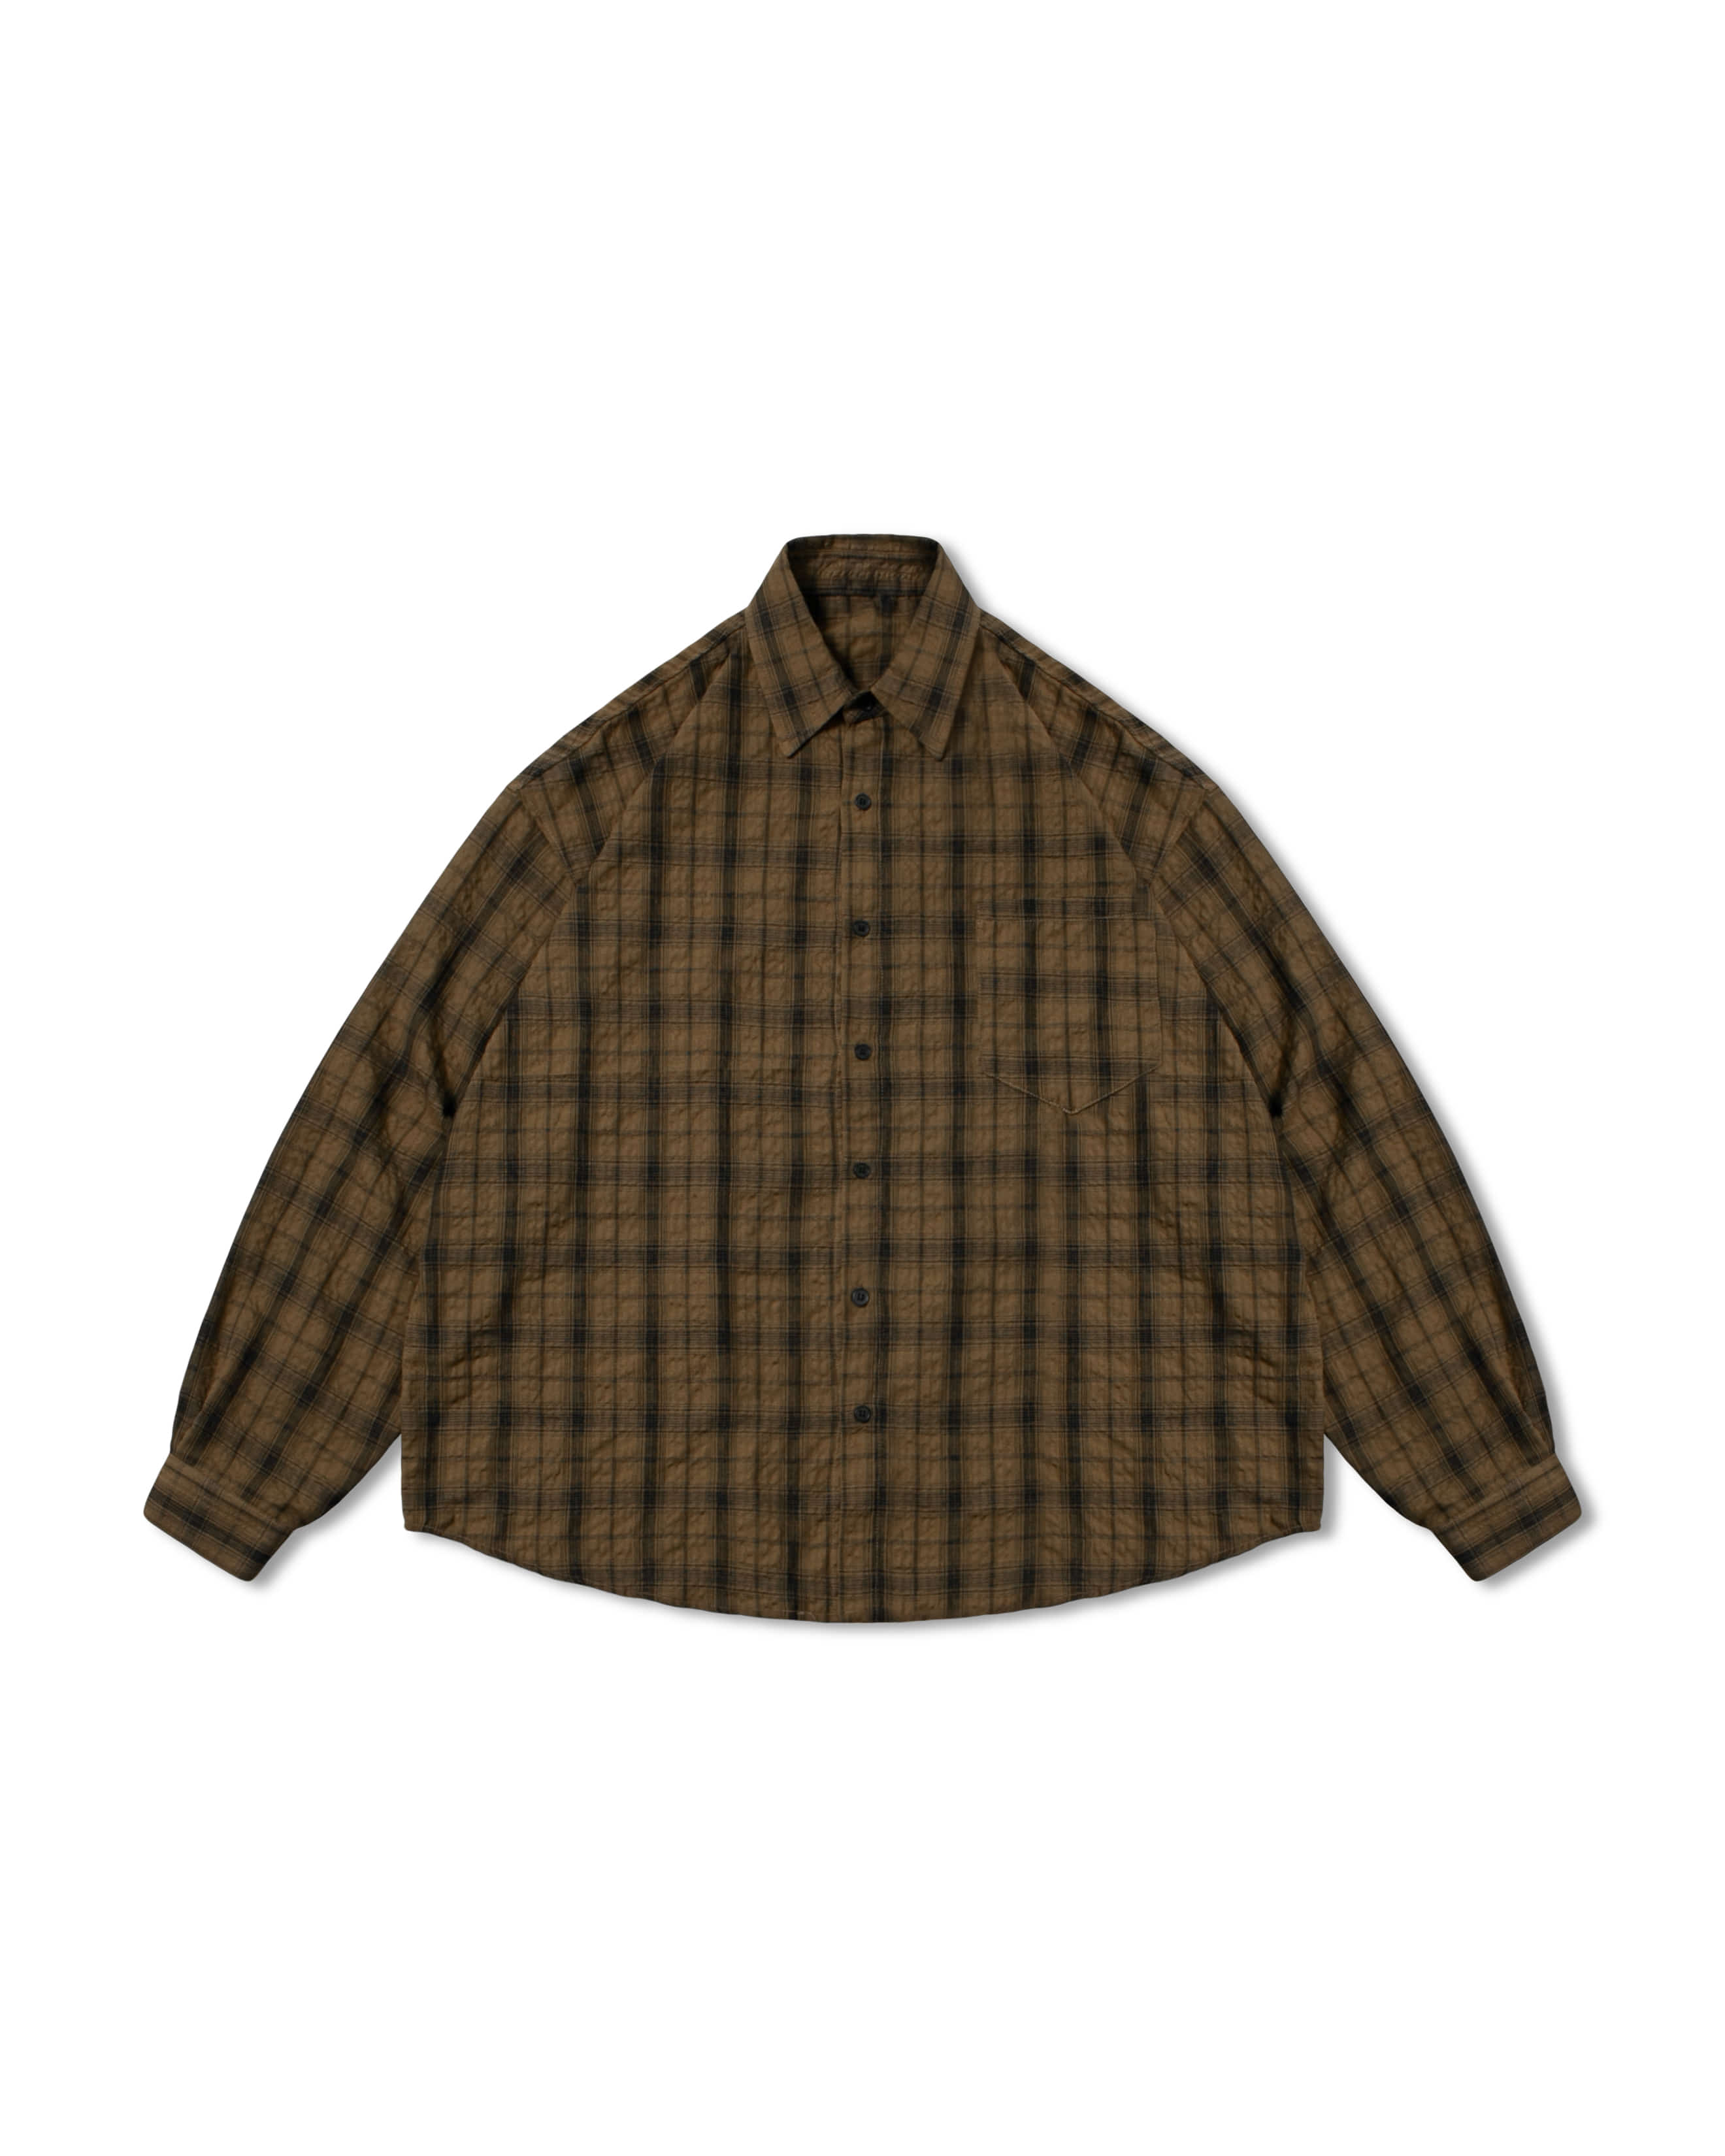 Seersucker Crinkle Check Shirt - Brown